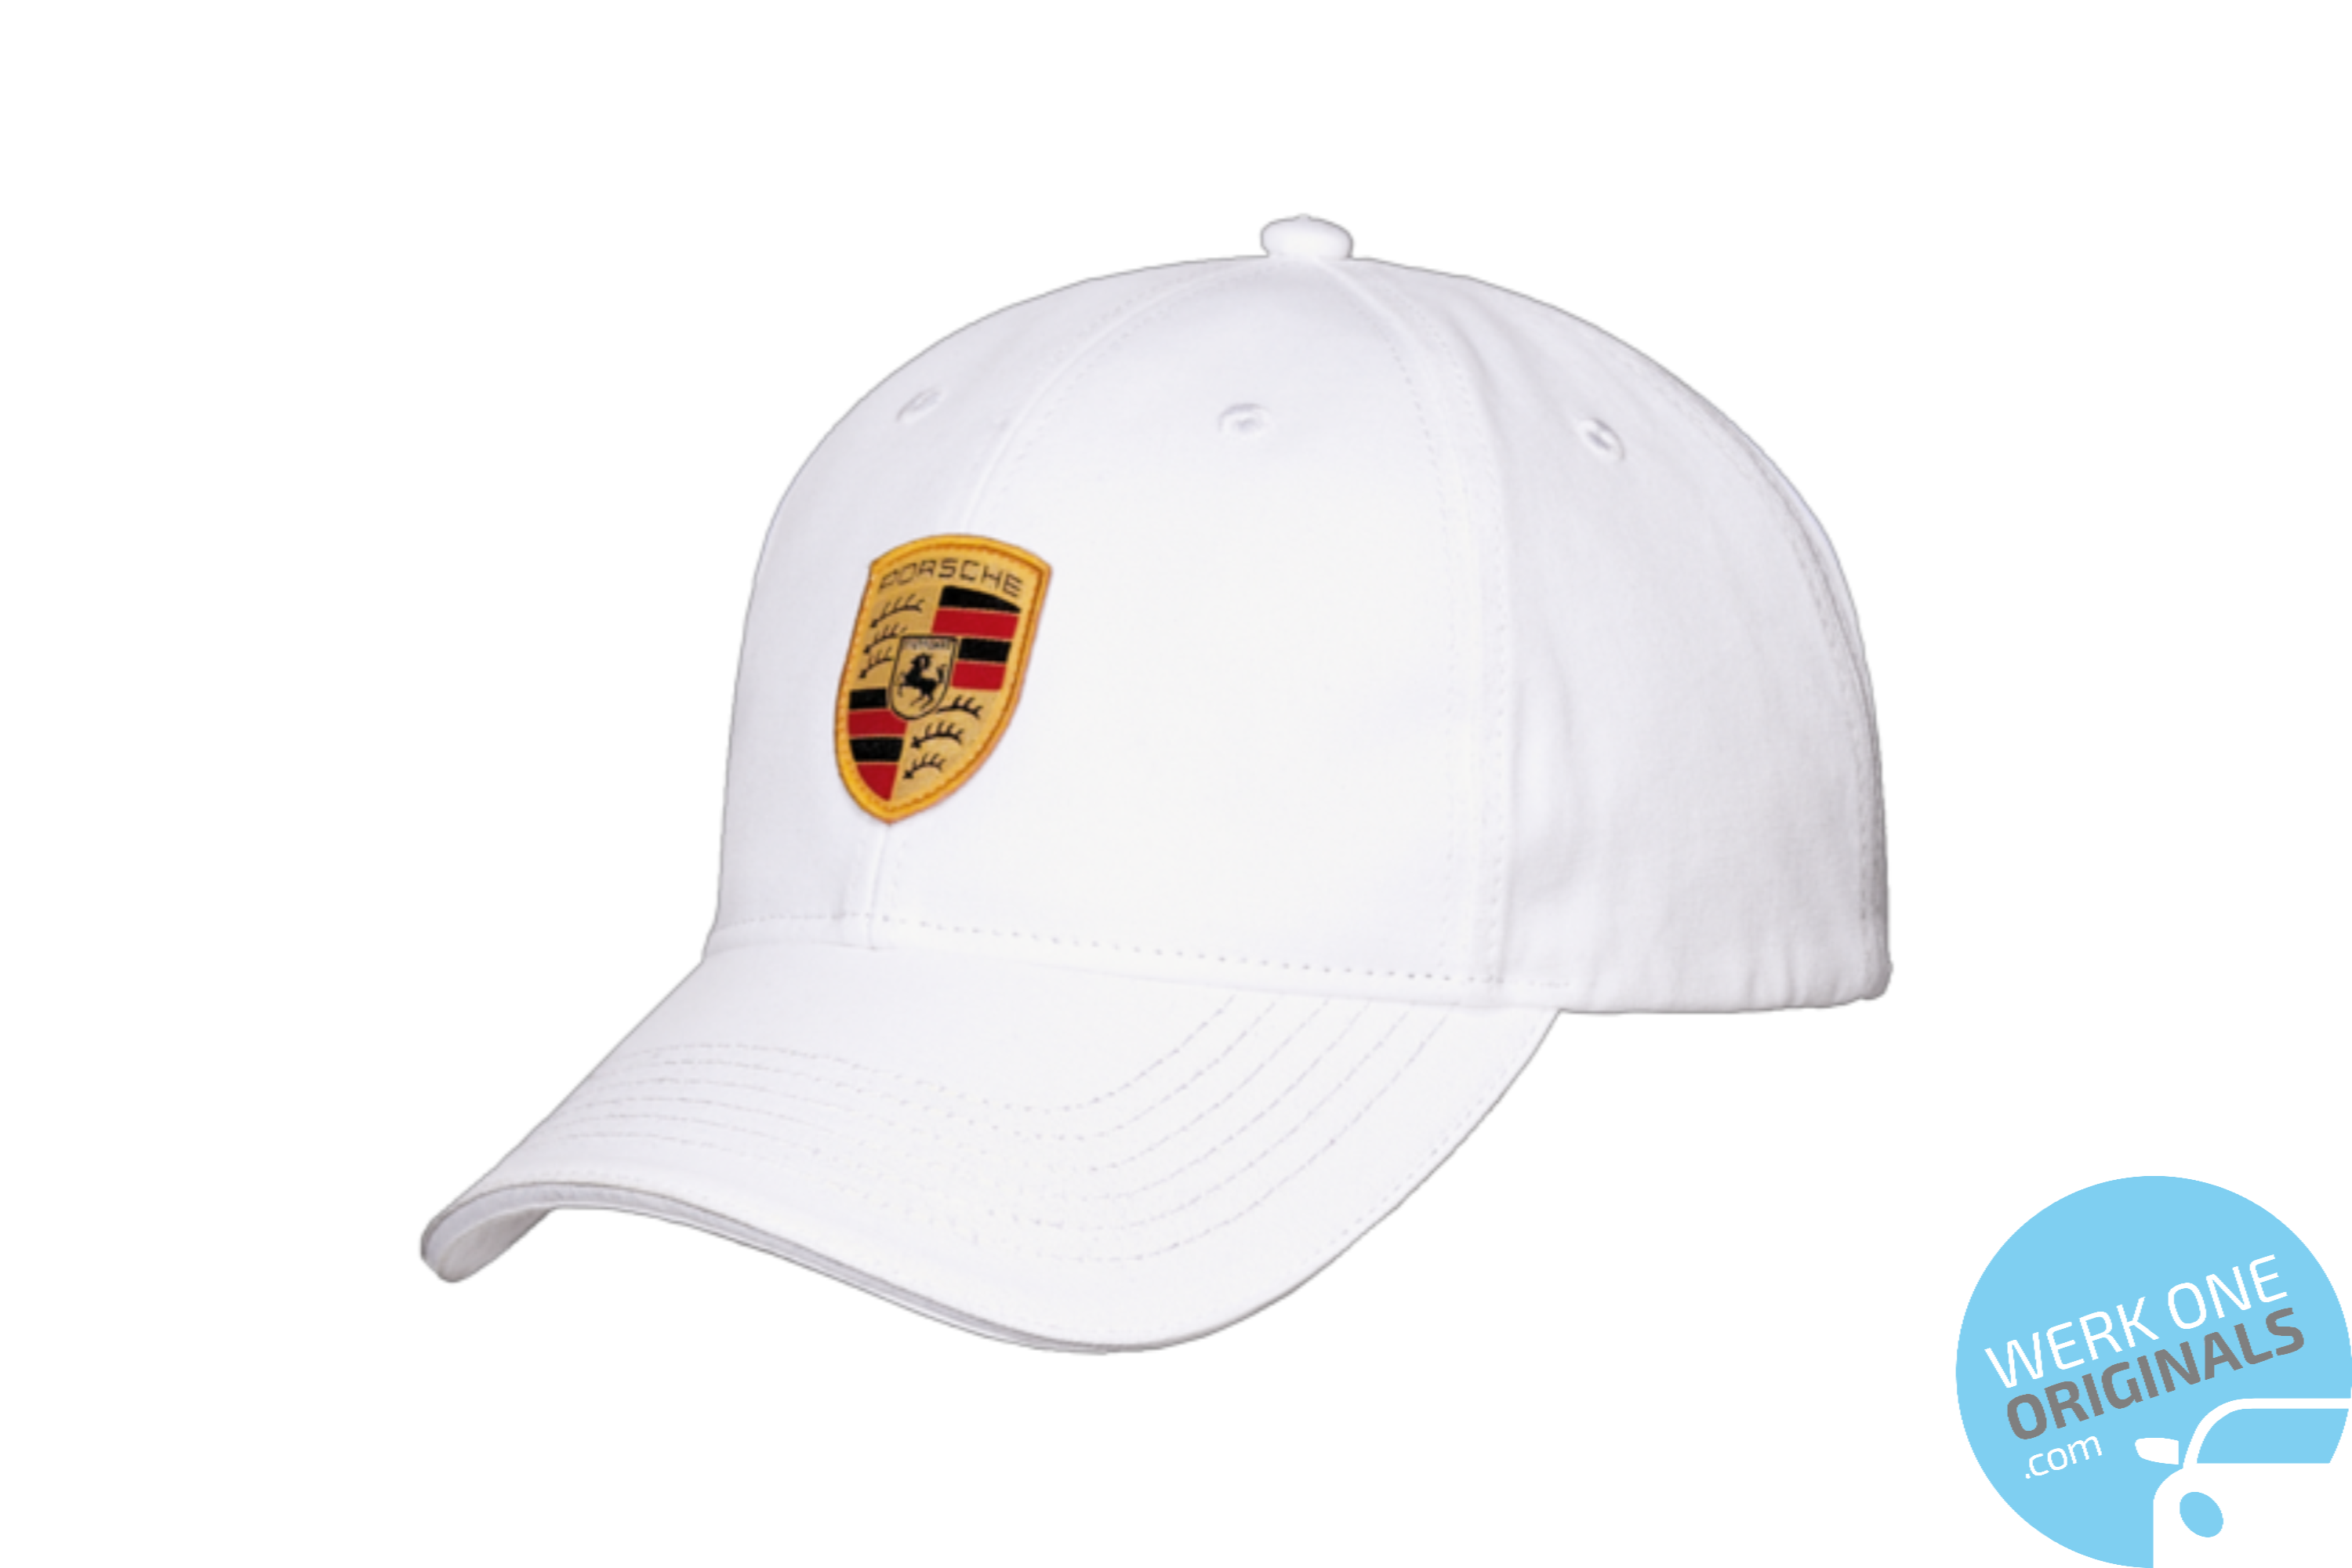 Official Porsche Baseball Cap - White